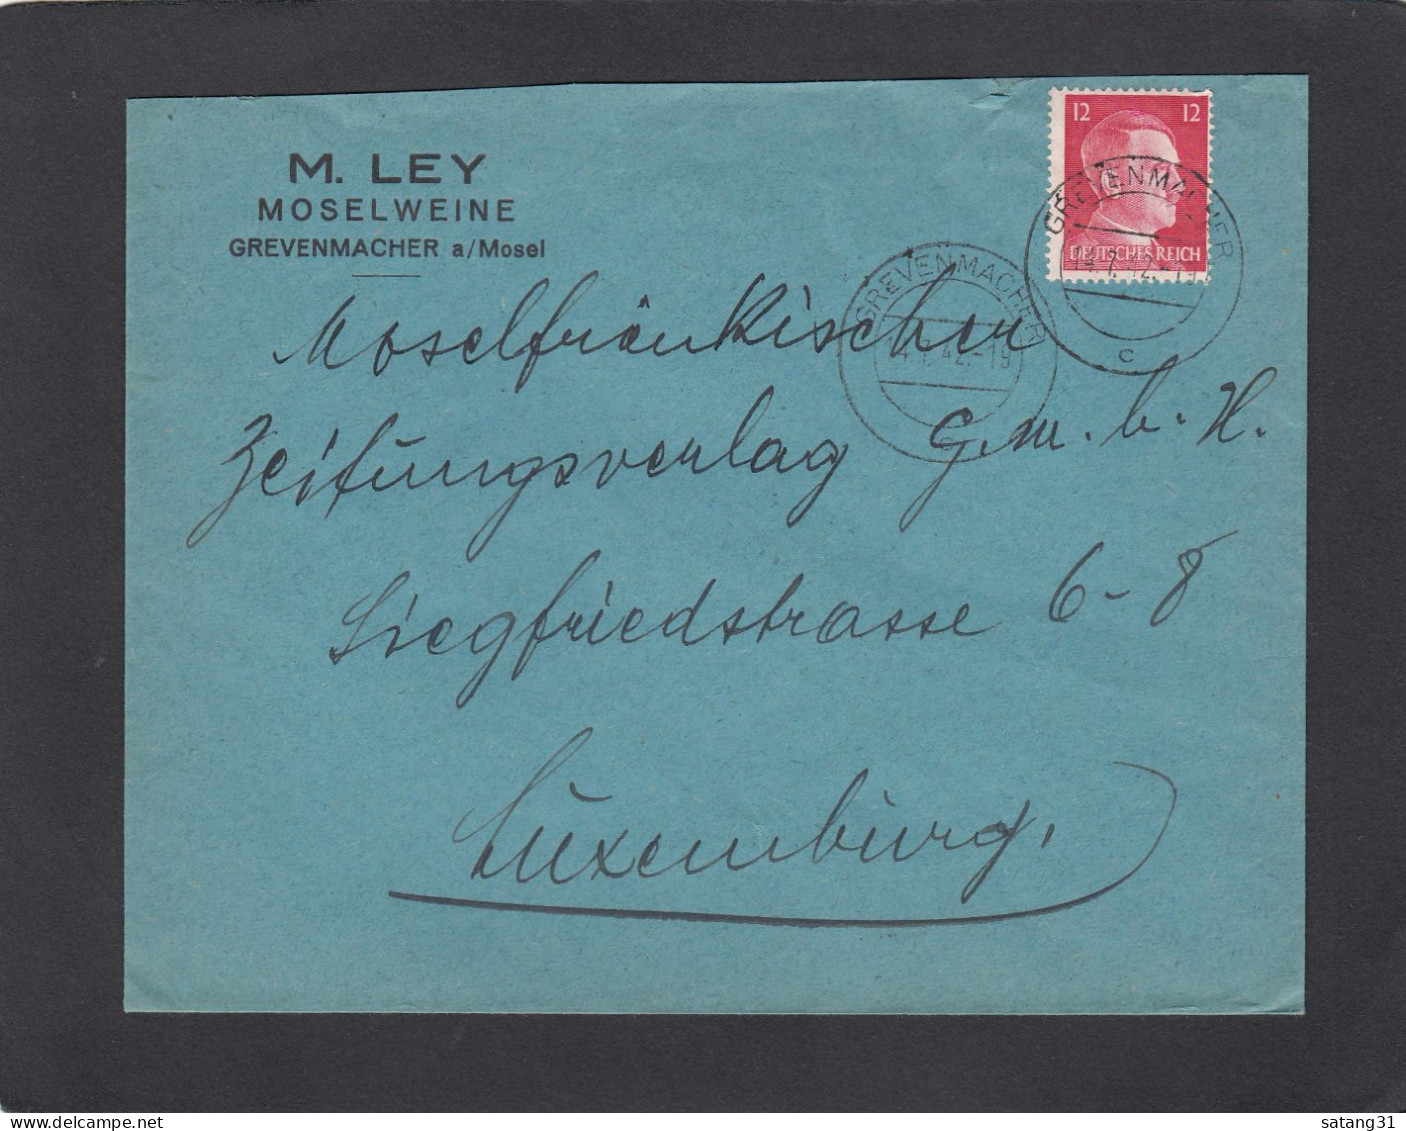 M. LEY, MOSELWEINE, GREVENMACHER. - 1940-1944 Deutsche Besatzung